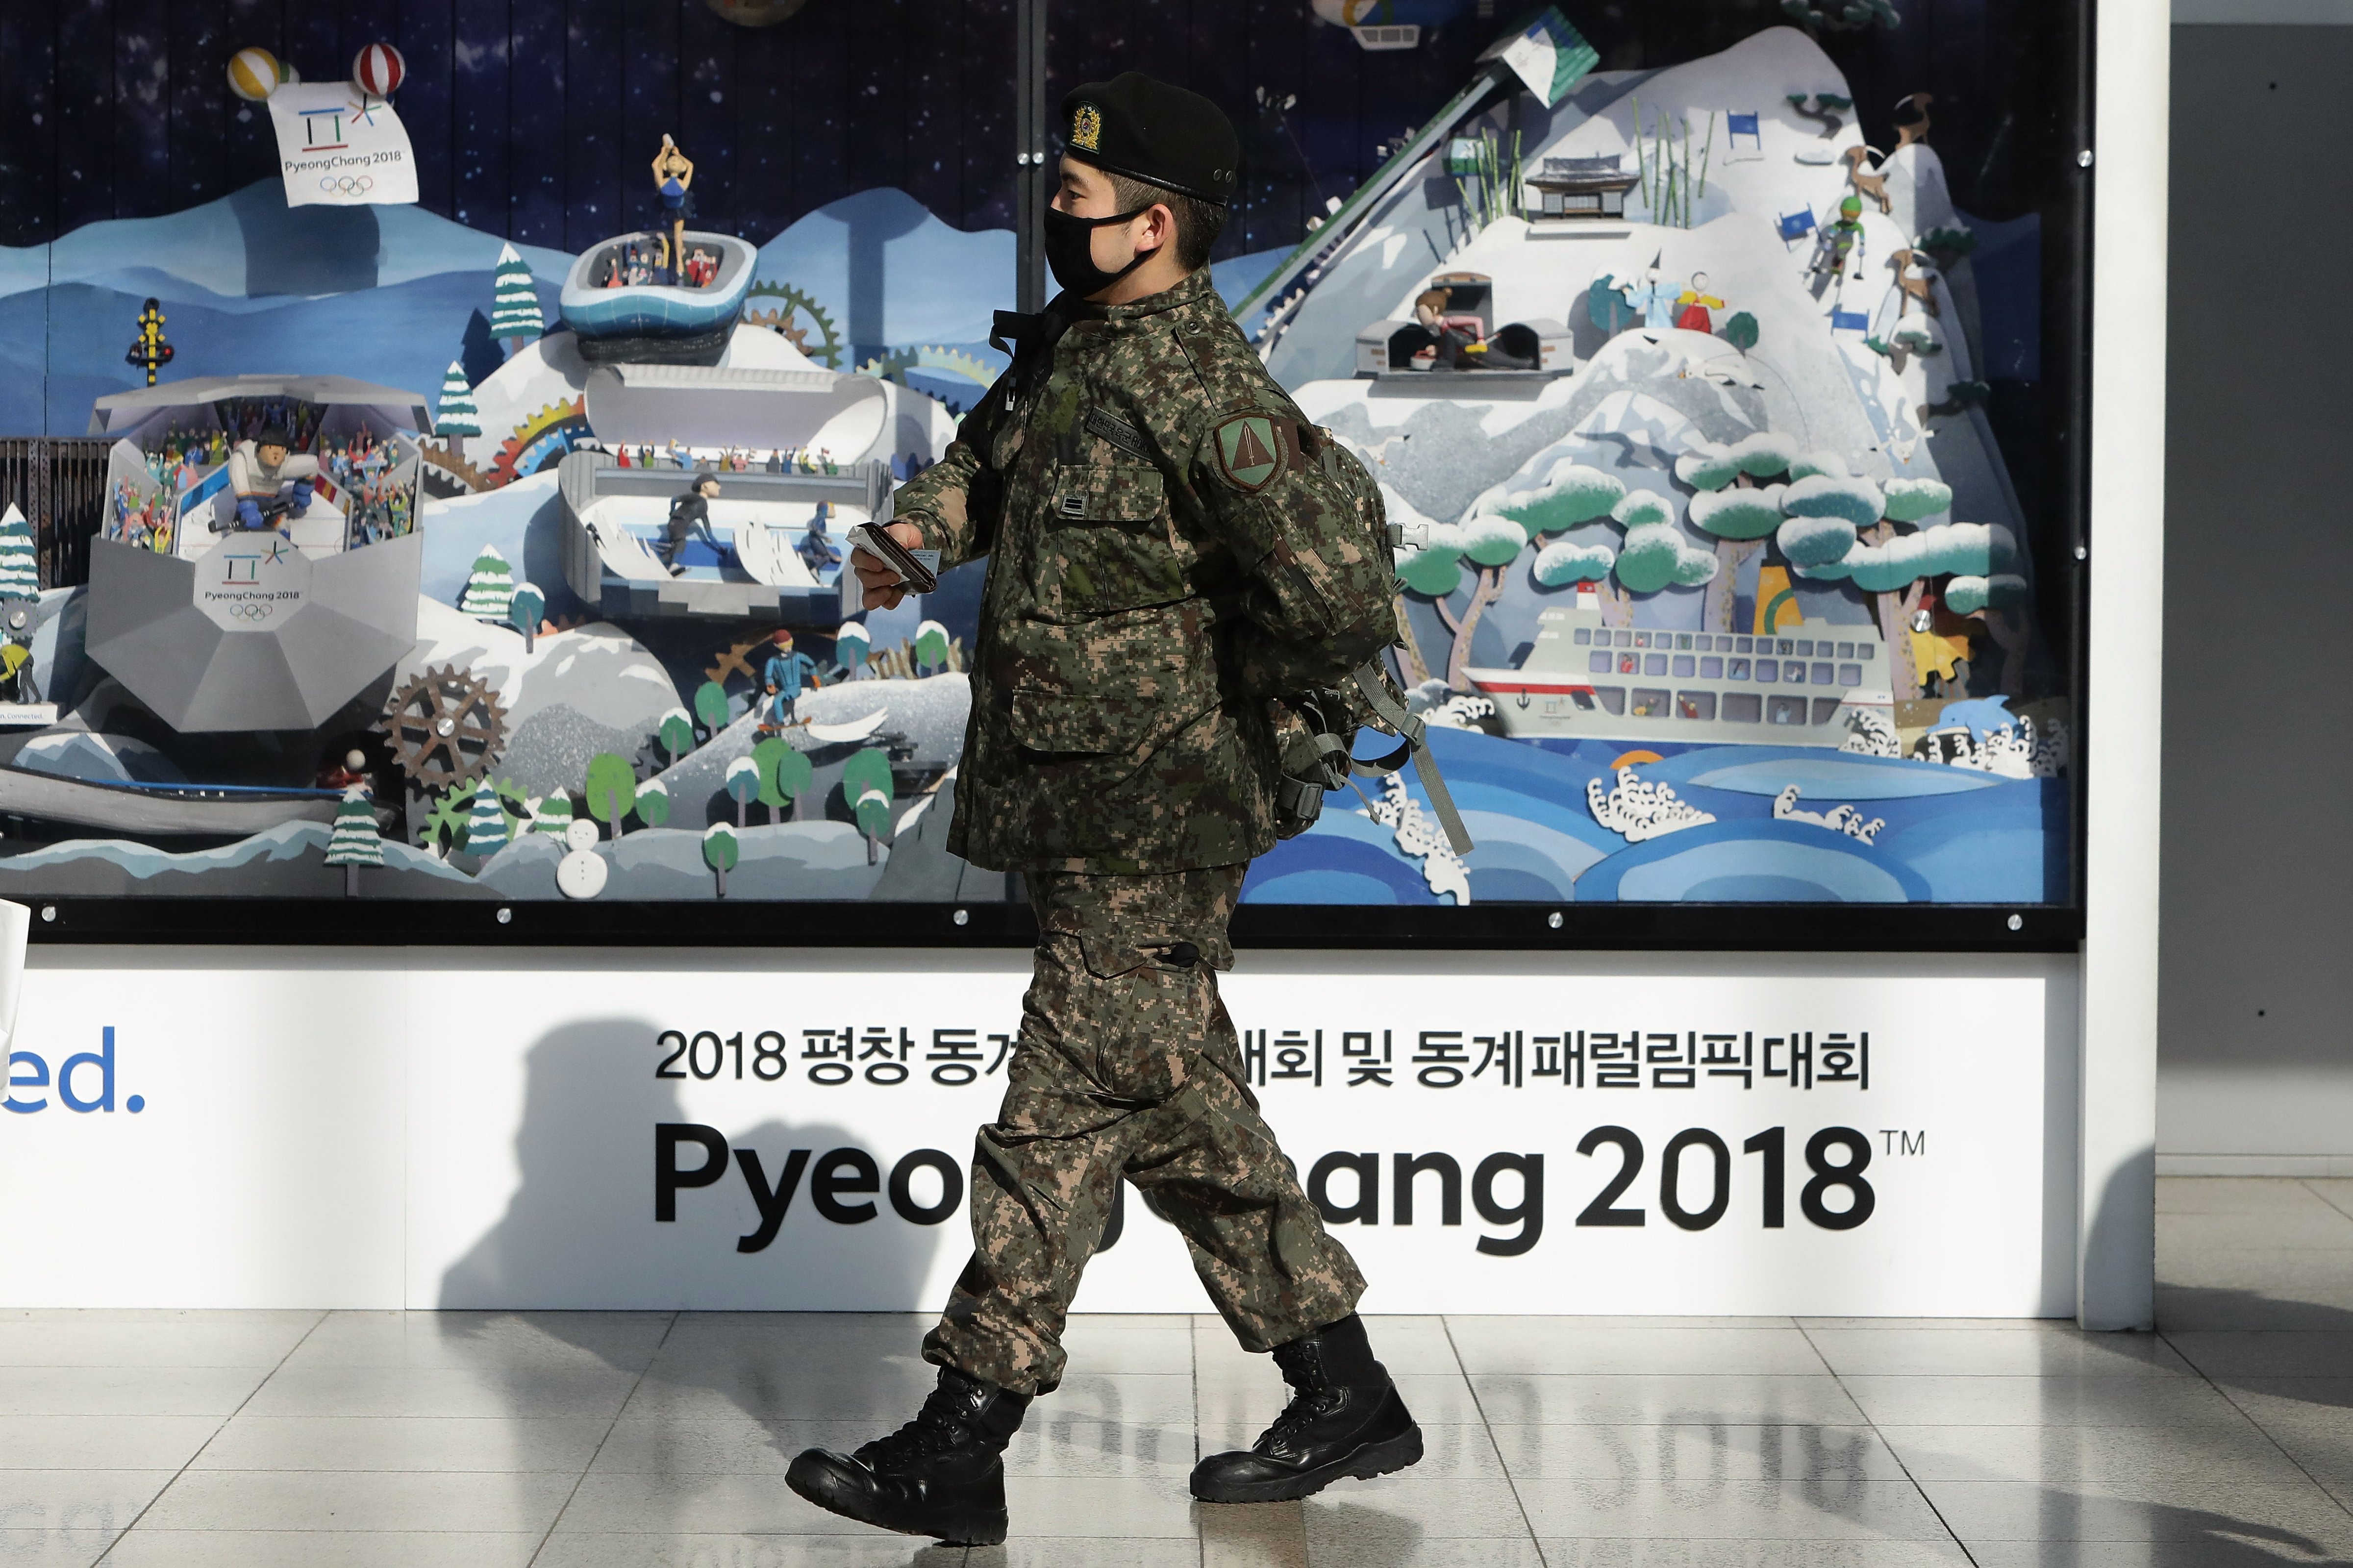 Koreas Agree On Holding Talks Ahead Of Olympics